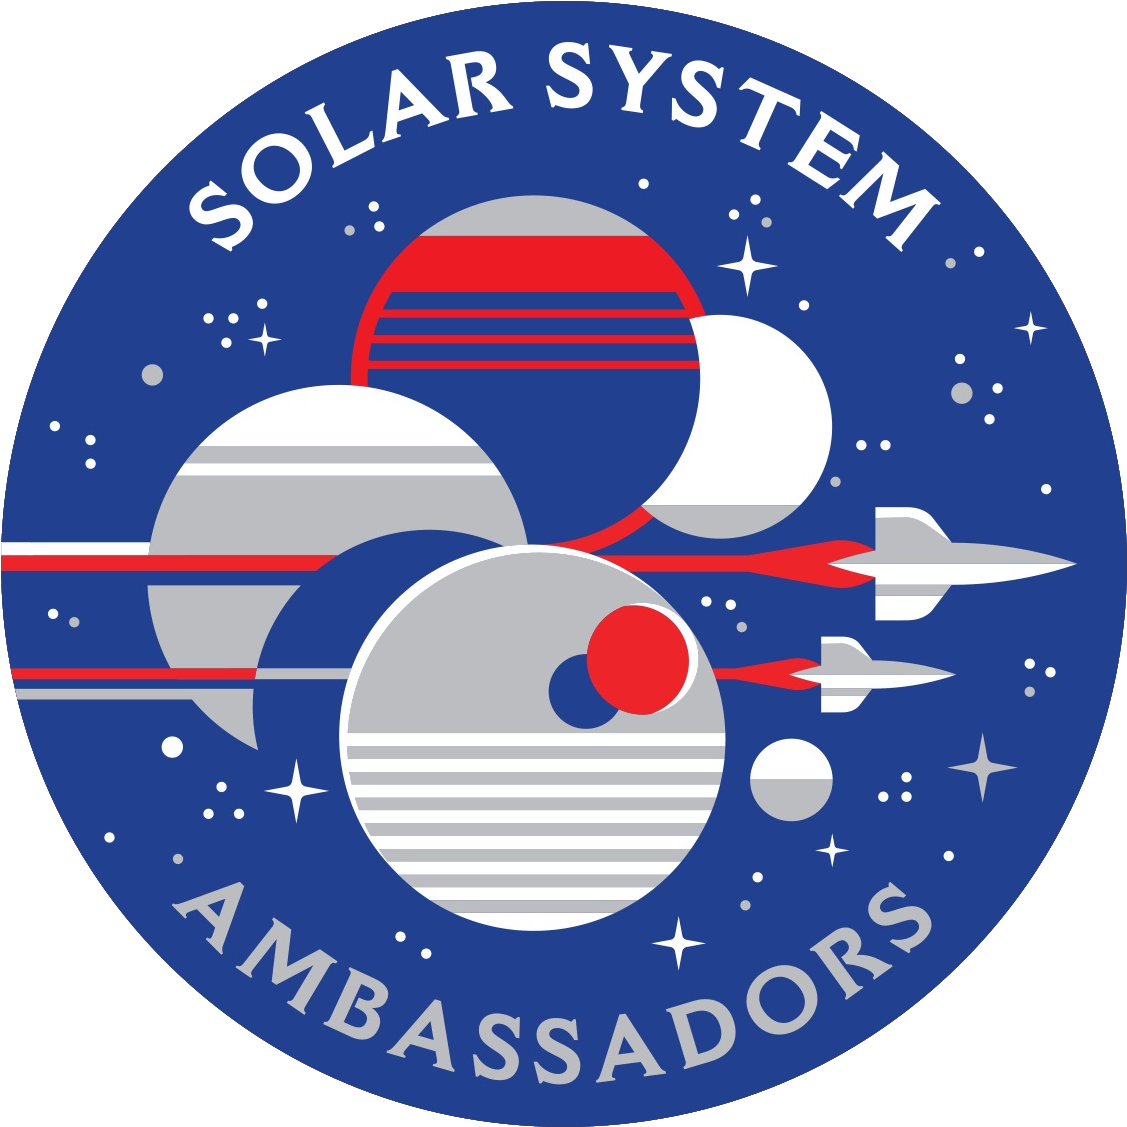 Solar System Ambassadors - Solar System Ambassador Logo (1280x1280), Png Download